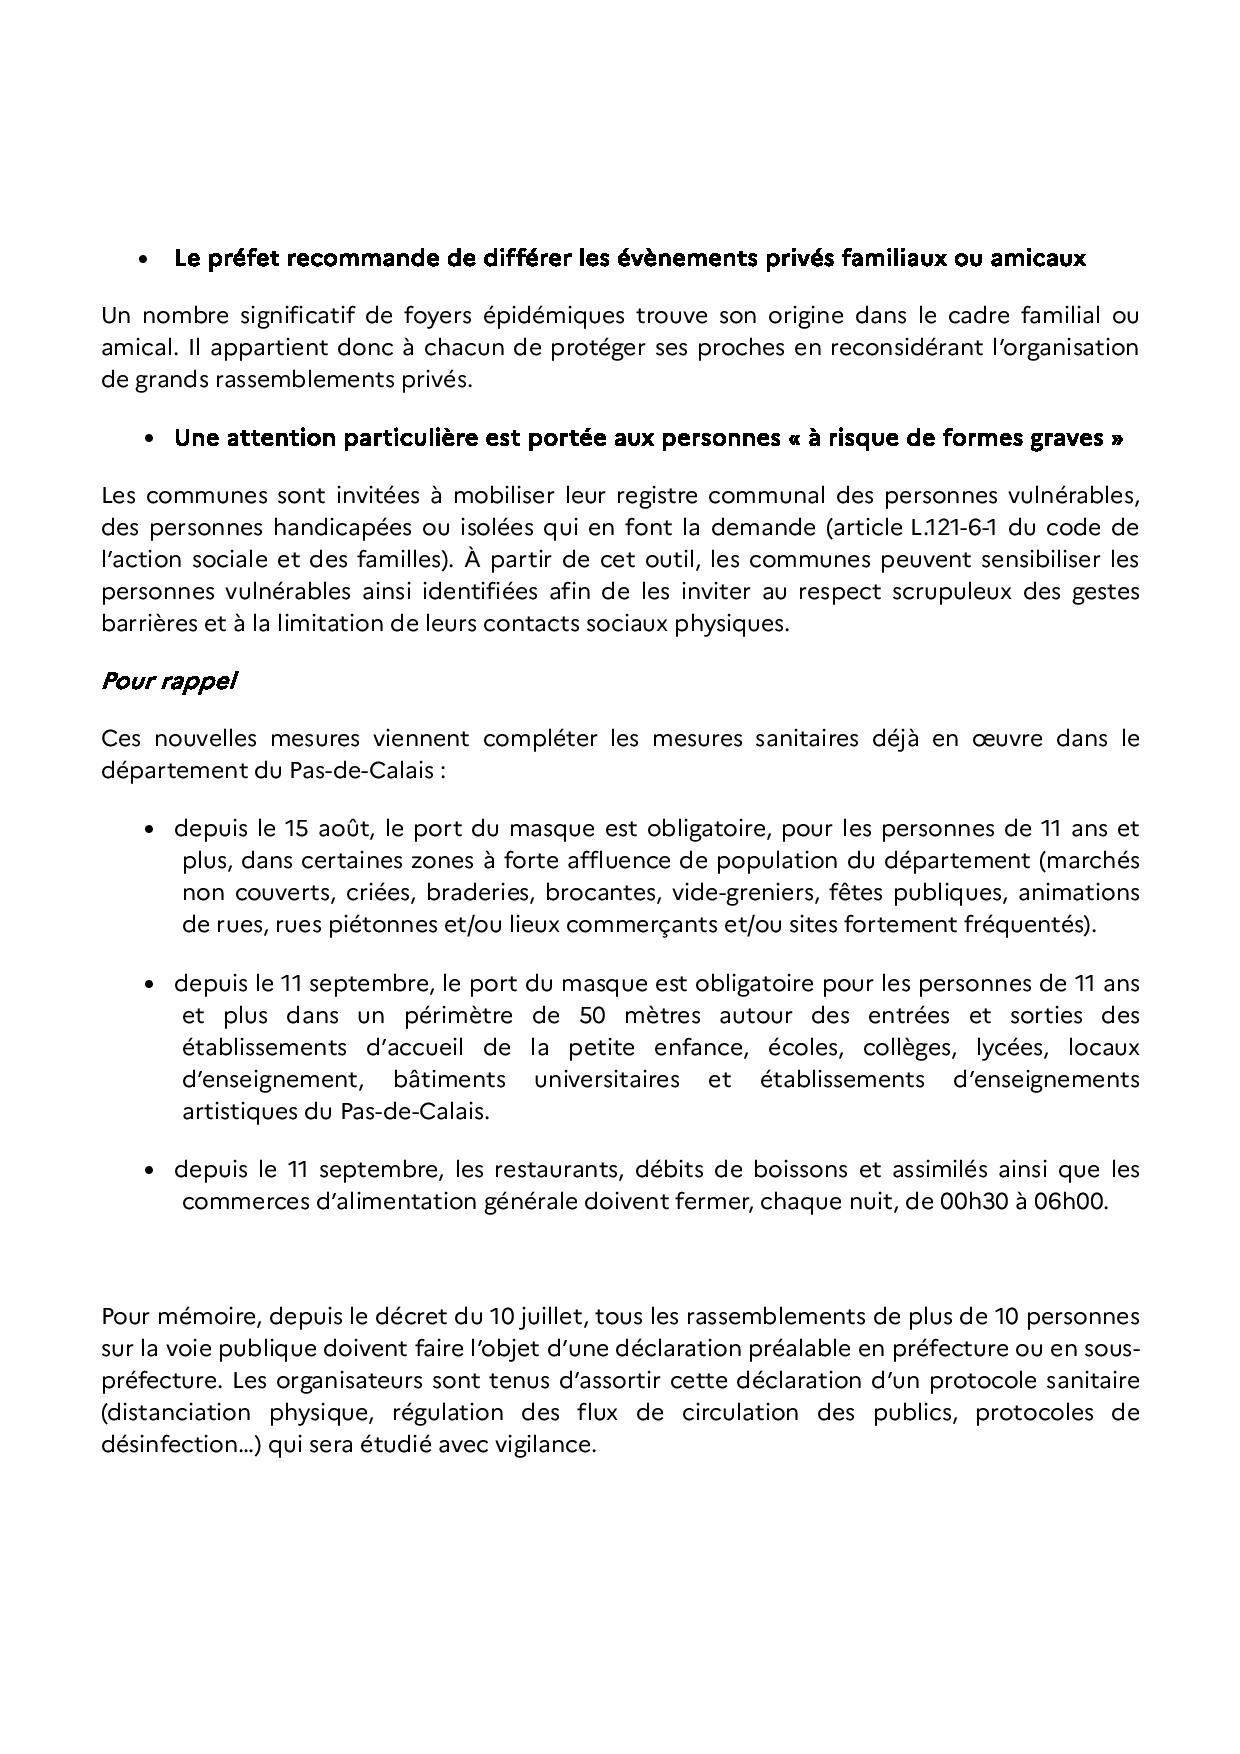 2020 09 15 renforcement des mesures sanitaires pour lutter contre la propagation du virus dans le Pas de Calais page 003